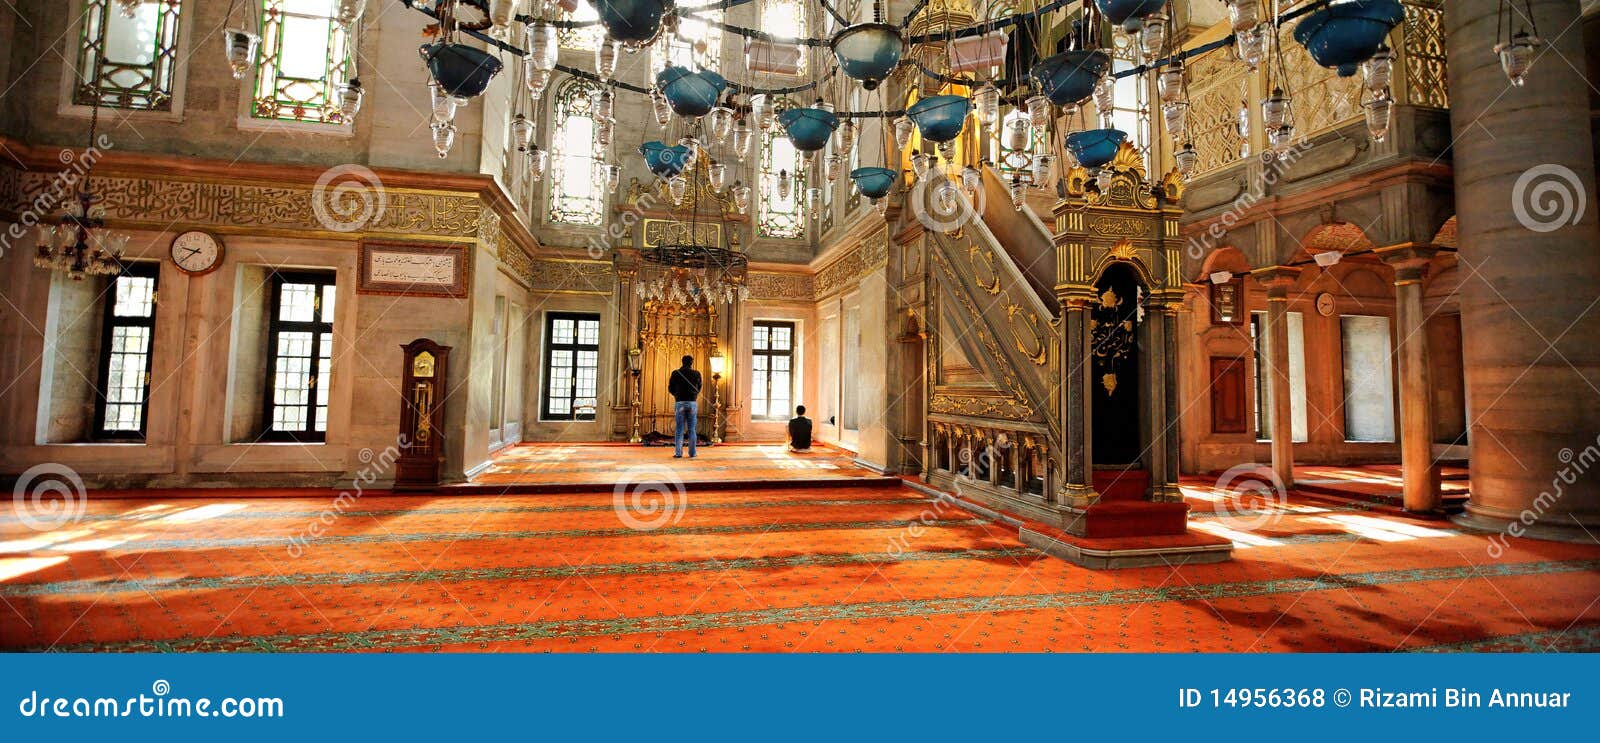 eyup sultan mosque, istanbul, turkey